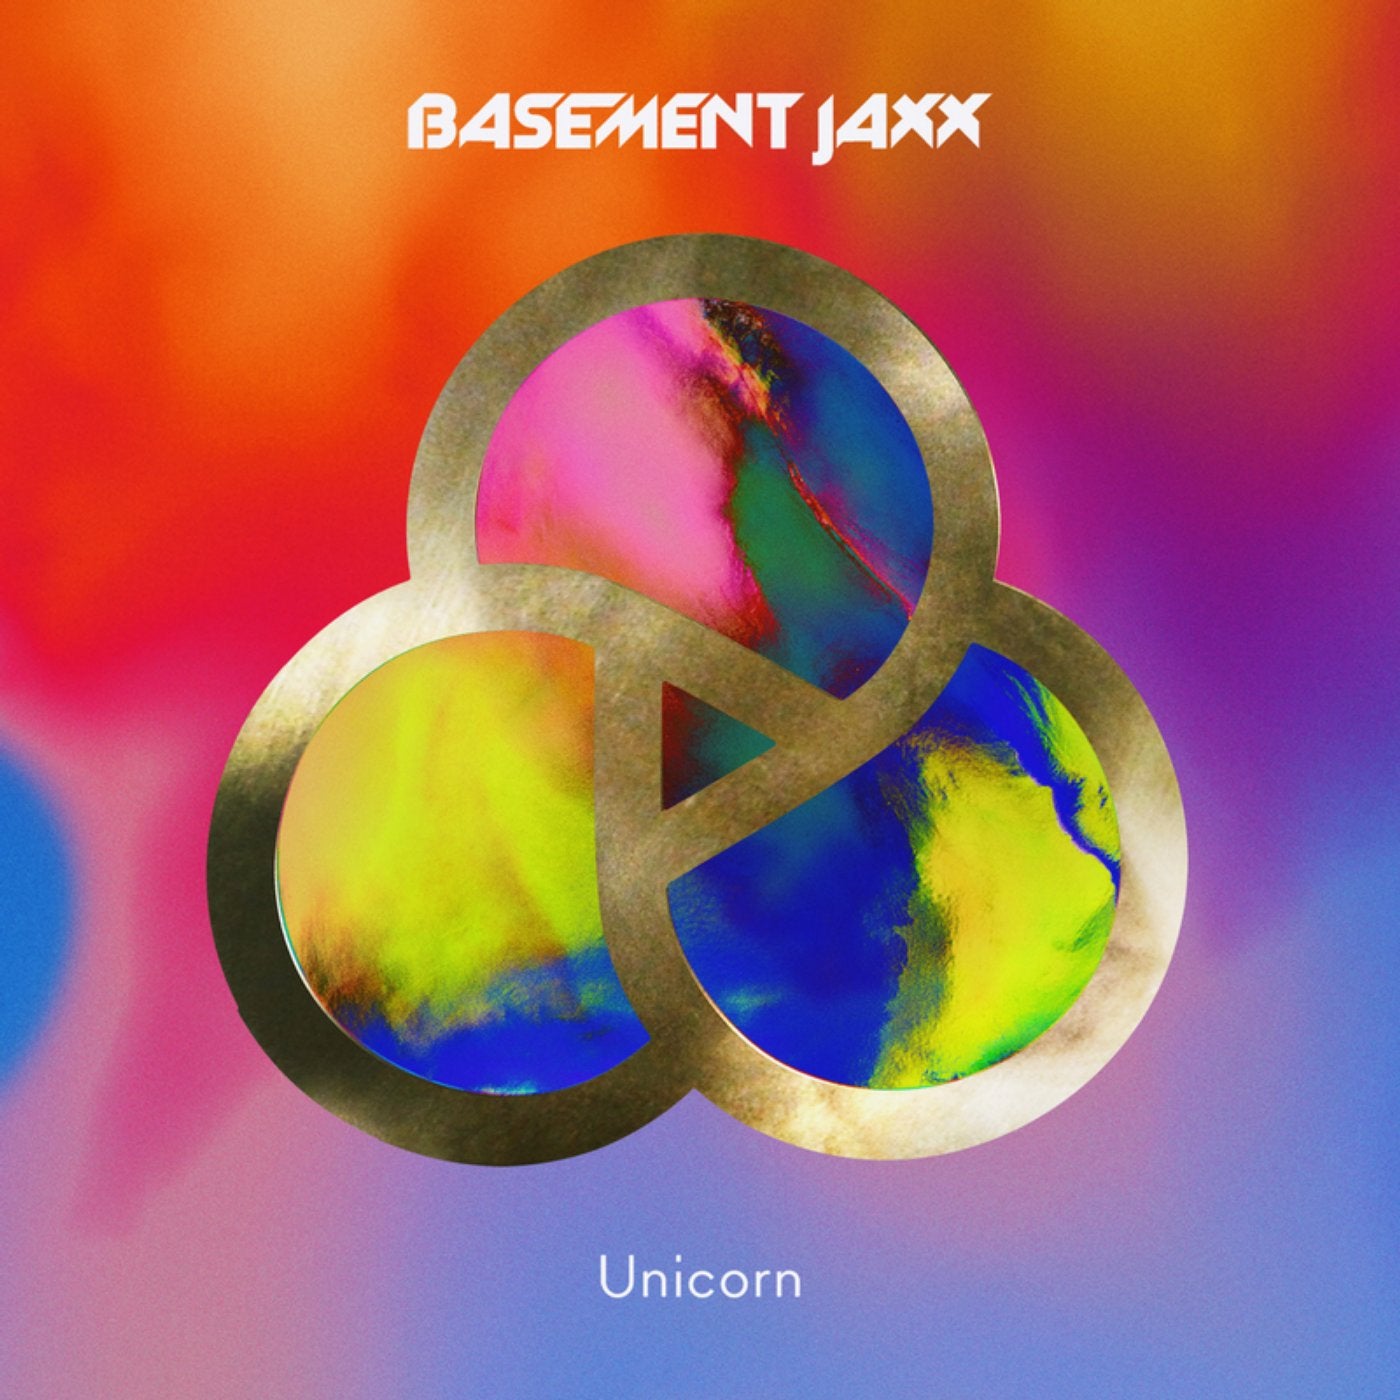 Unicorn - The Beatport Remixes